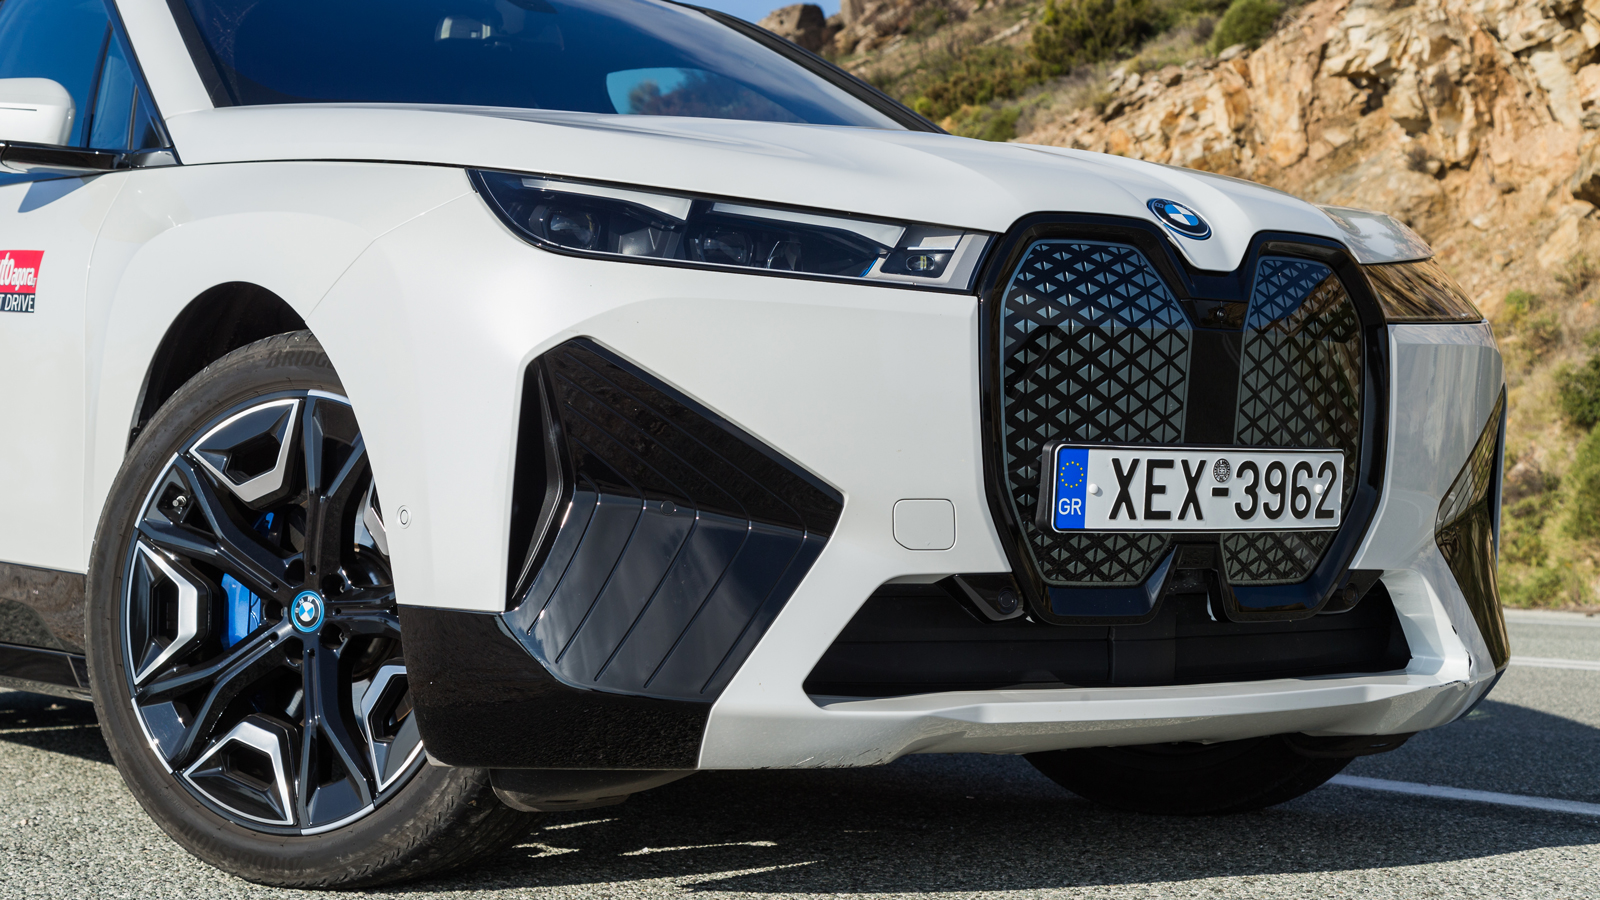 Επιβλητική σε διαστάσεις, σύγχρονη σε σχεδίαση. H BMW iX είναι η αρχή μιας νέας εποχής για τα SUV της εταιρίας.